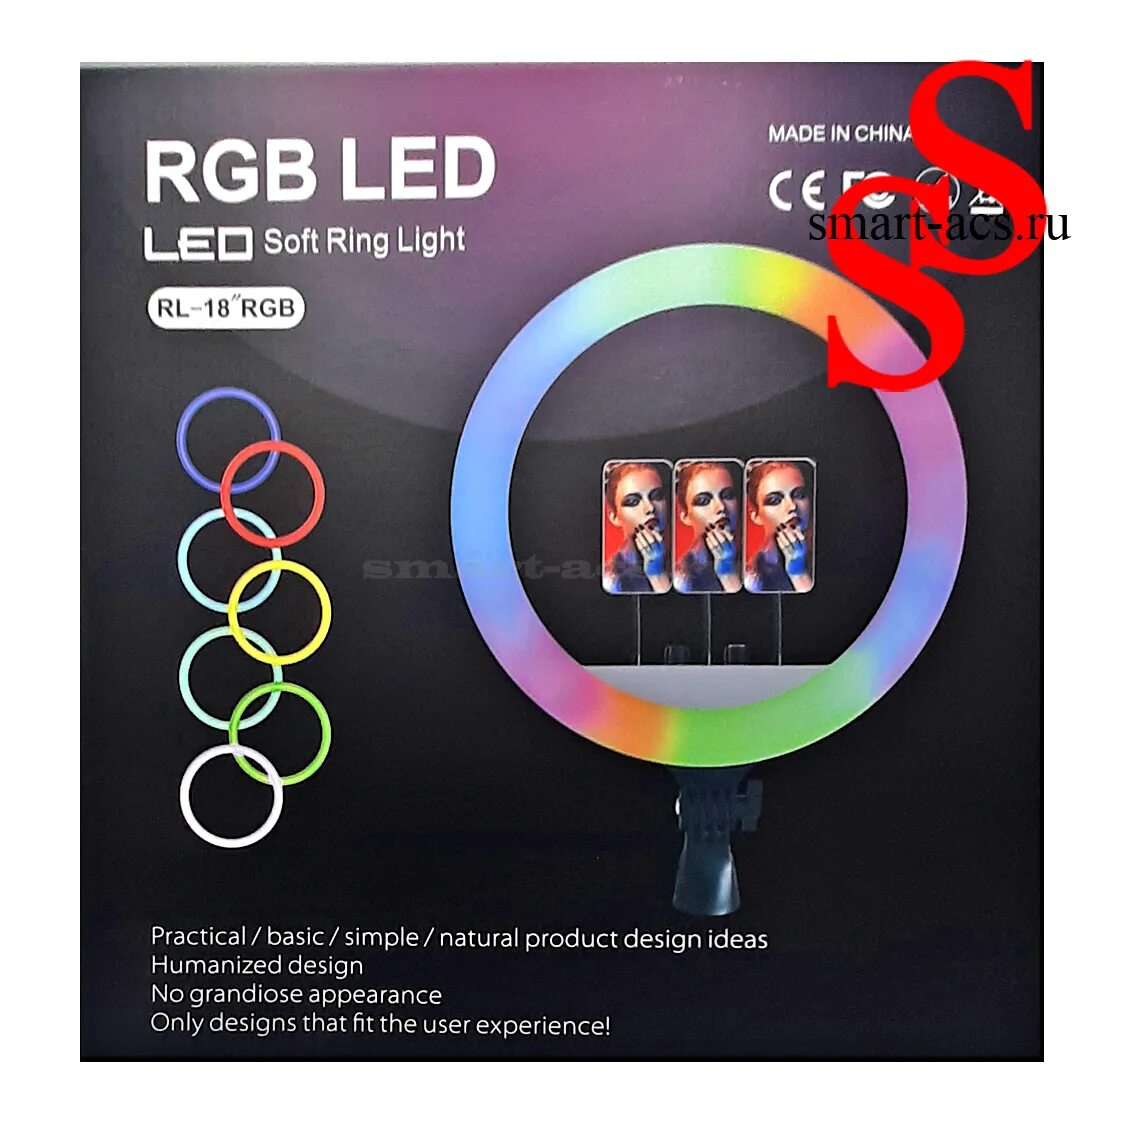 Rl 18 кольцевая. Кольцевая лампа RL-18 RGB 45 см. Кольцевая лампа RL - 18 (RGB). Кольцевая лампа rl18. Цветная Кольцевая лампа 45см led Soft Ring Light rl18 RGB.